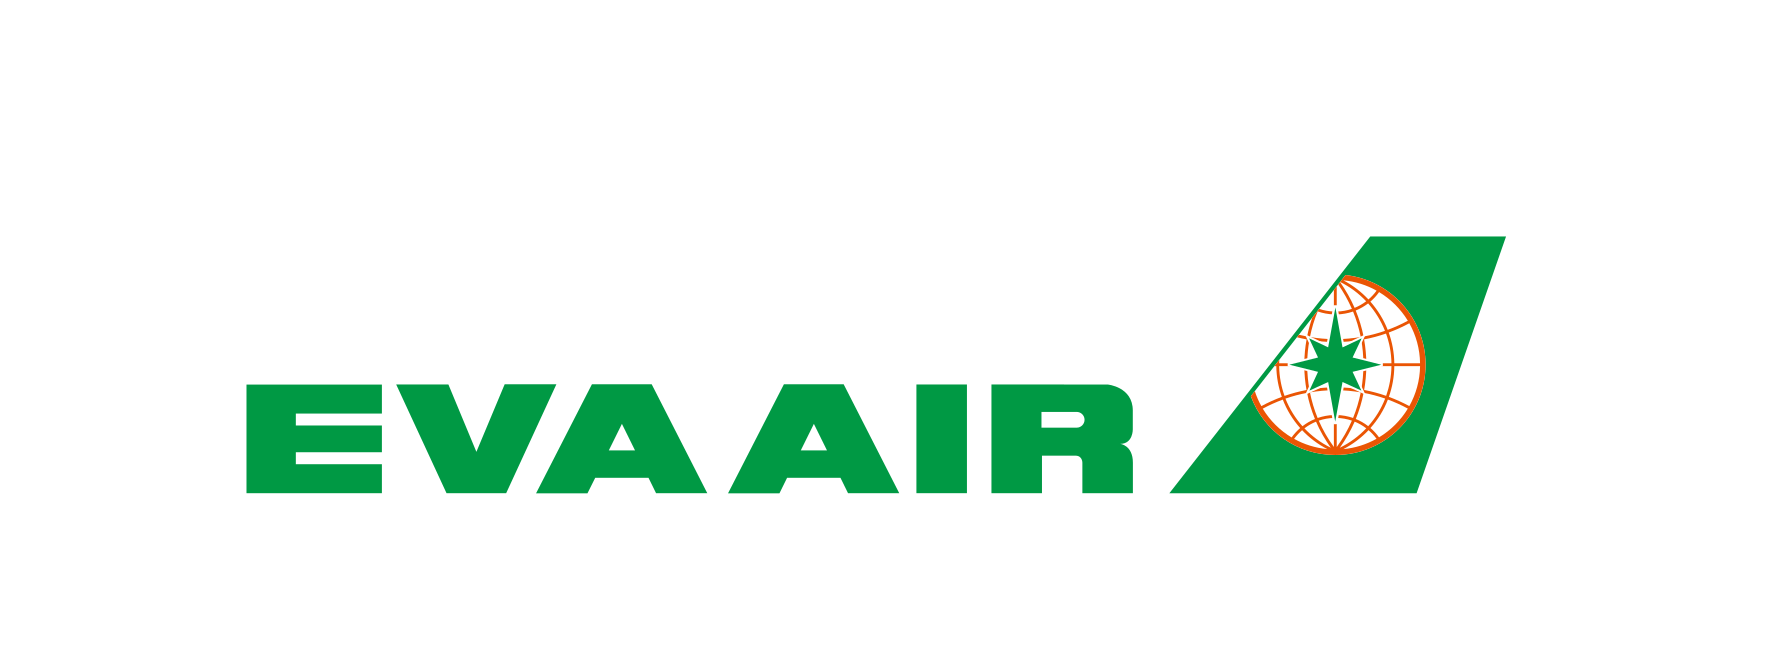 Eva Air Logo - Eva Air careers in aviation worldwide I AviationCV.com